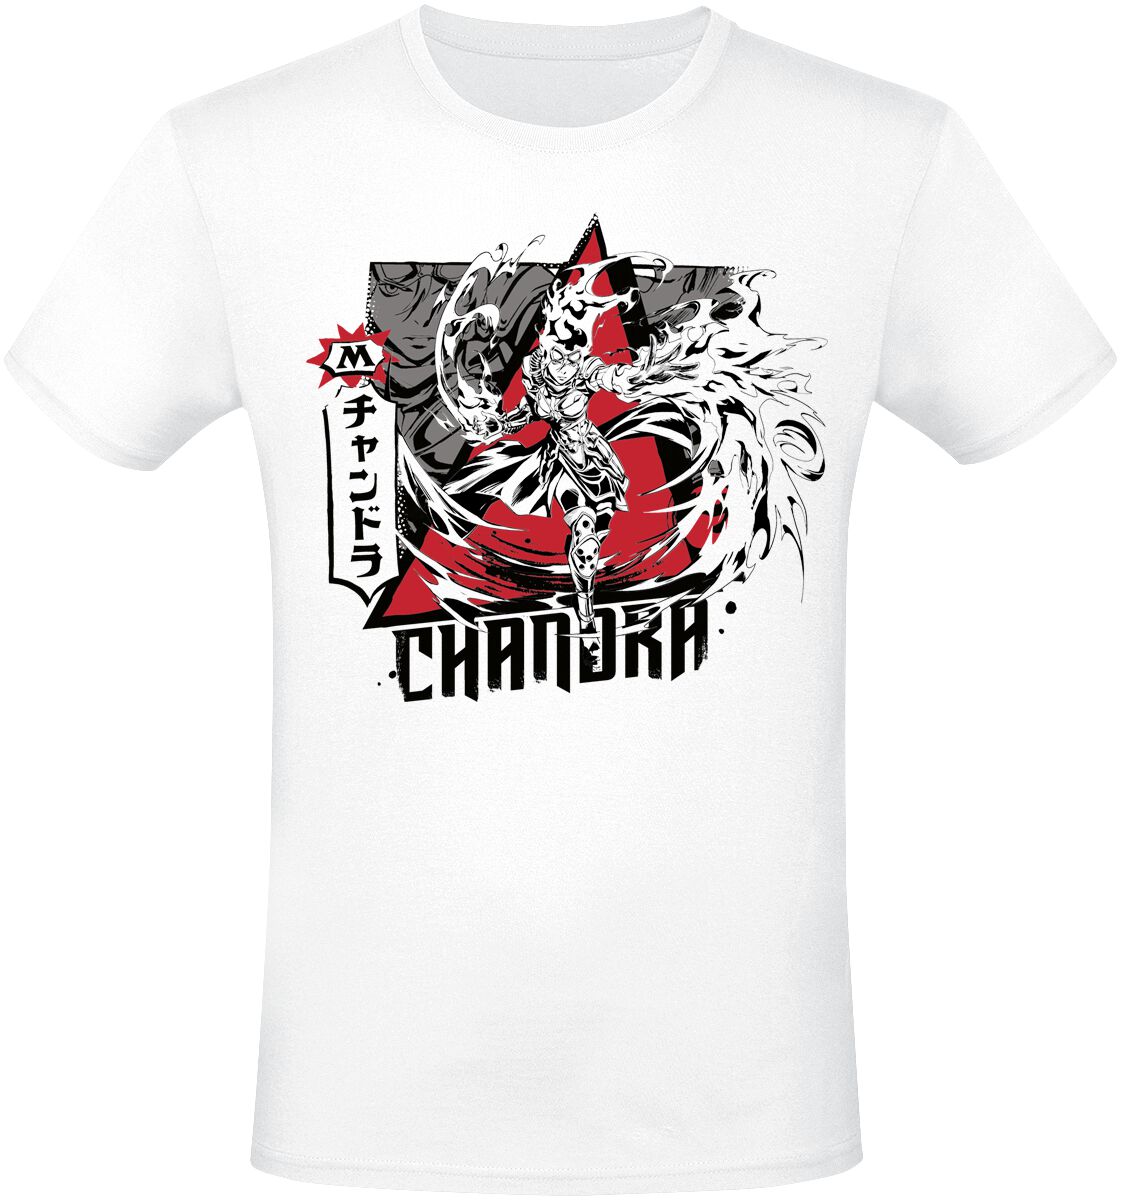 Magic: The Gathering - Gaming T-Shirt - Chandra - S bis XXL - für Männer - Größe S - weiß  - EMP exklusives Merchandise!